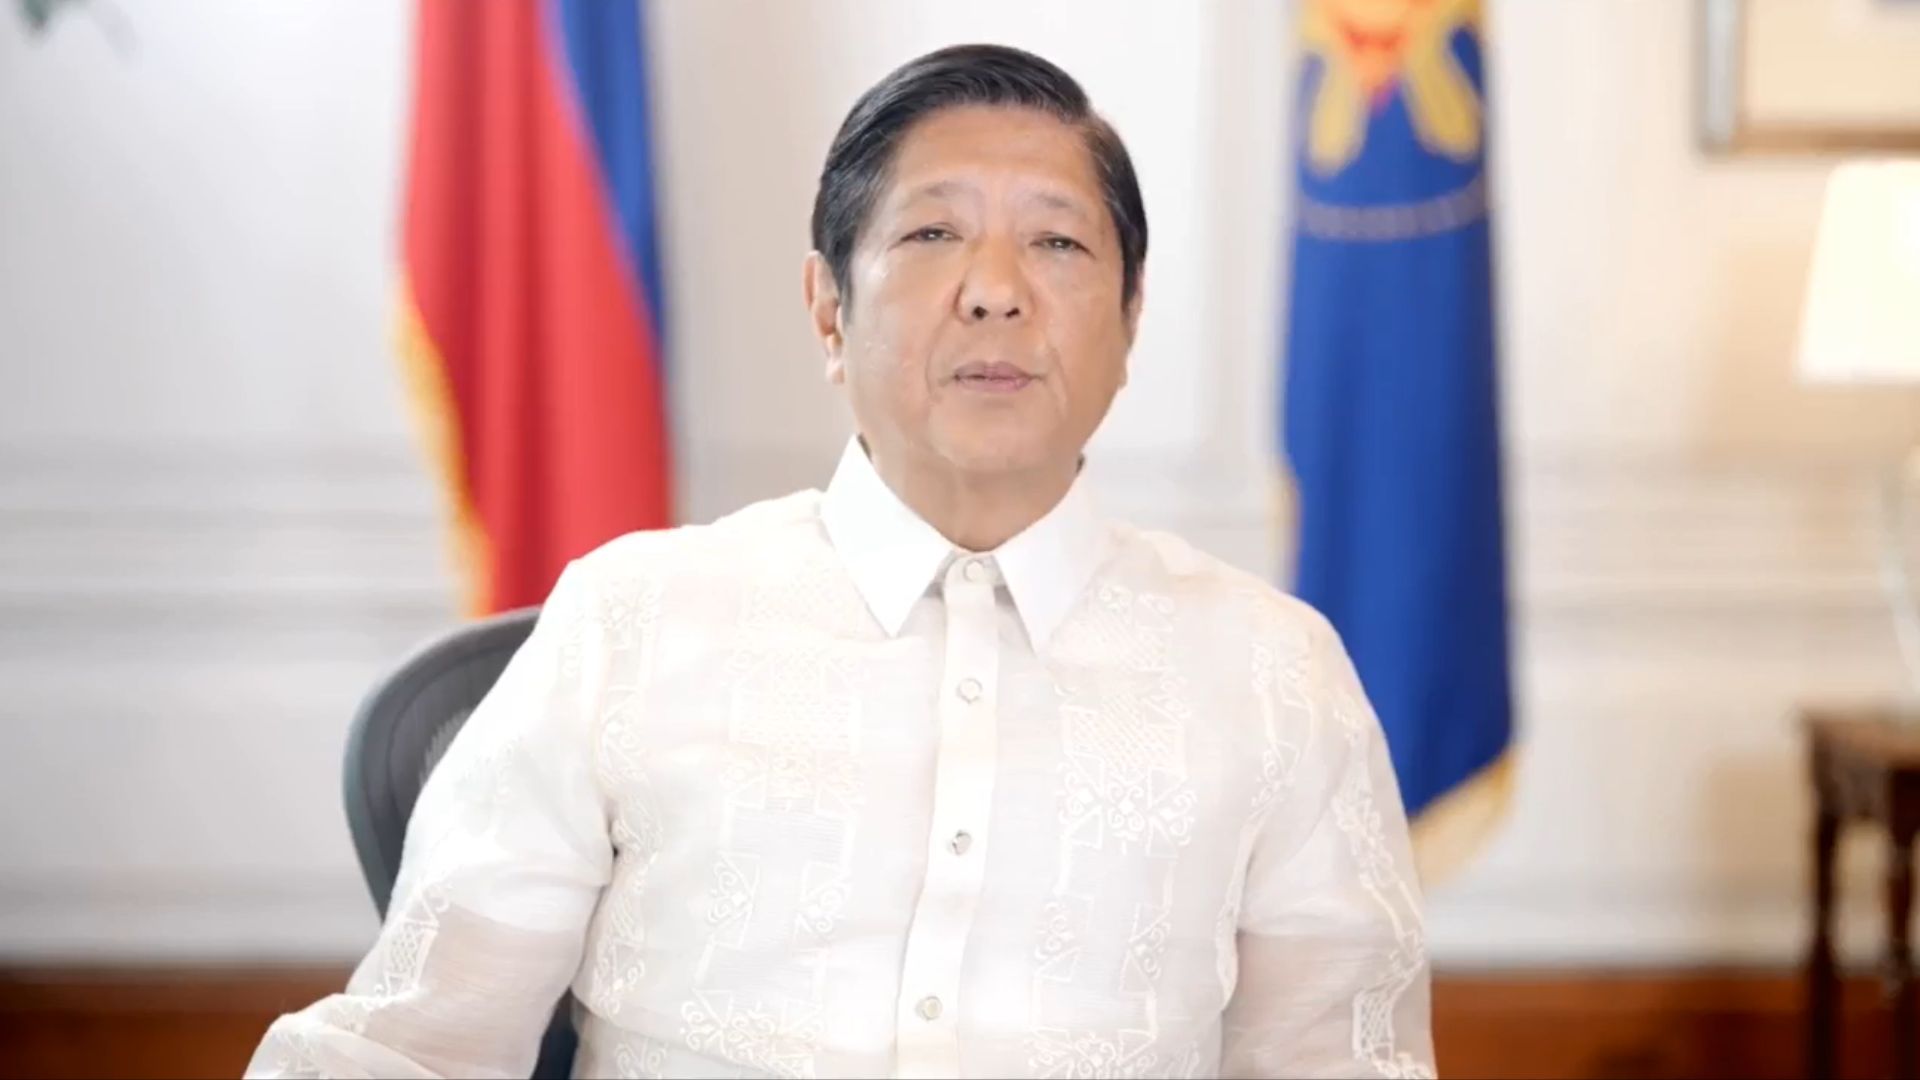 Pangulong Marcos sinabing wala siyang kinalaman sa pagpapalit ng liderato sa Senado